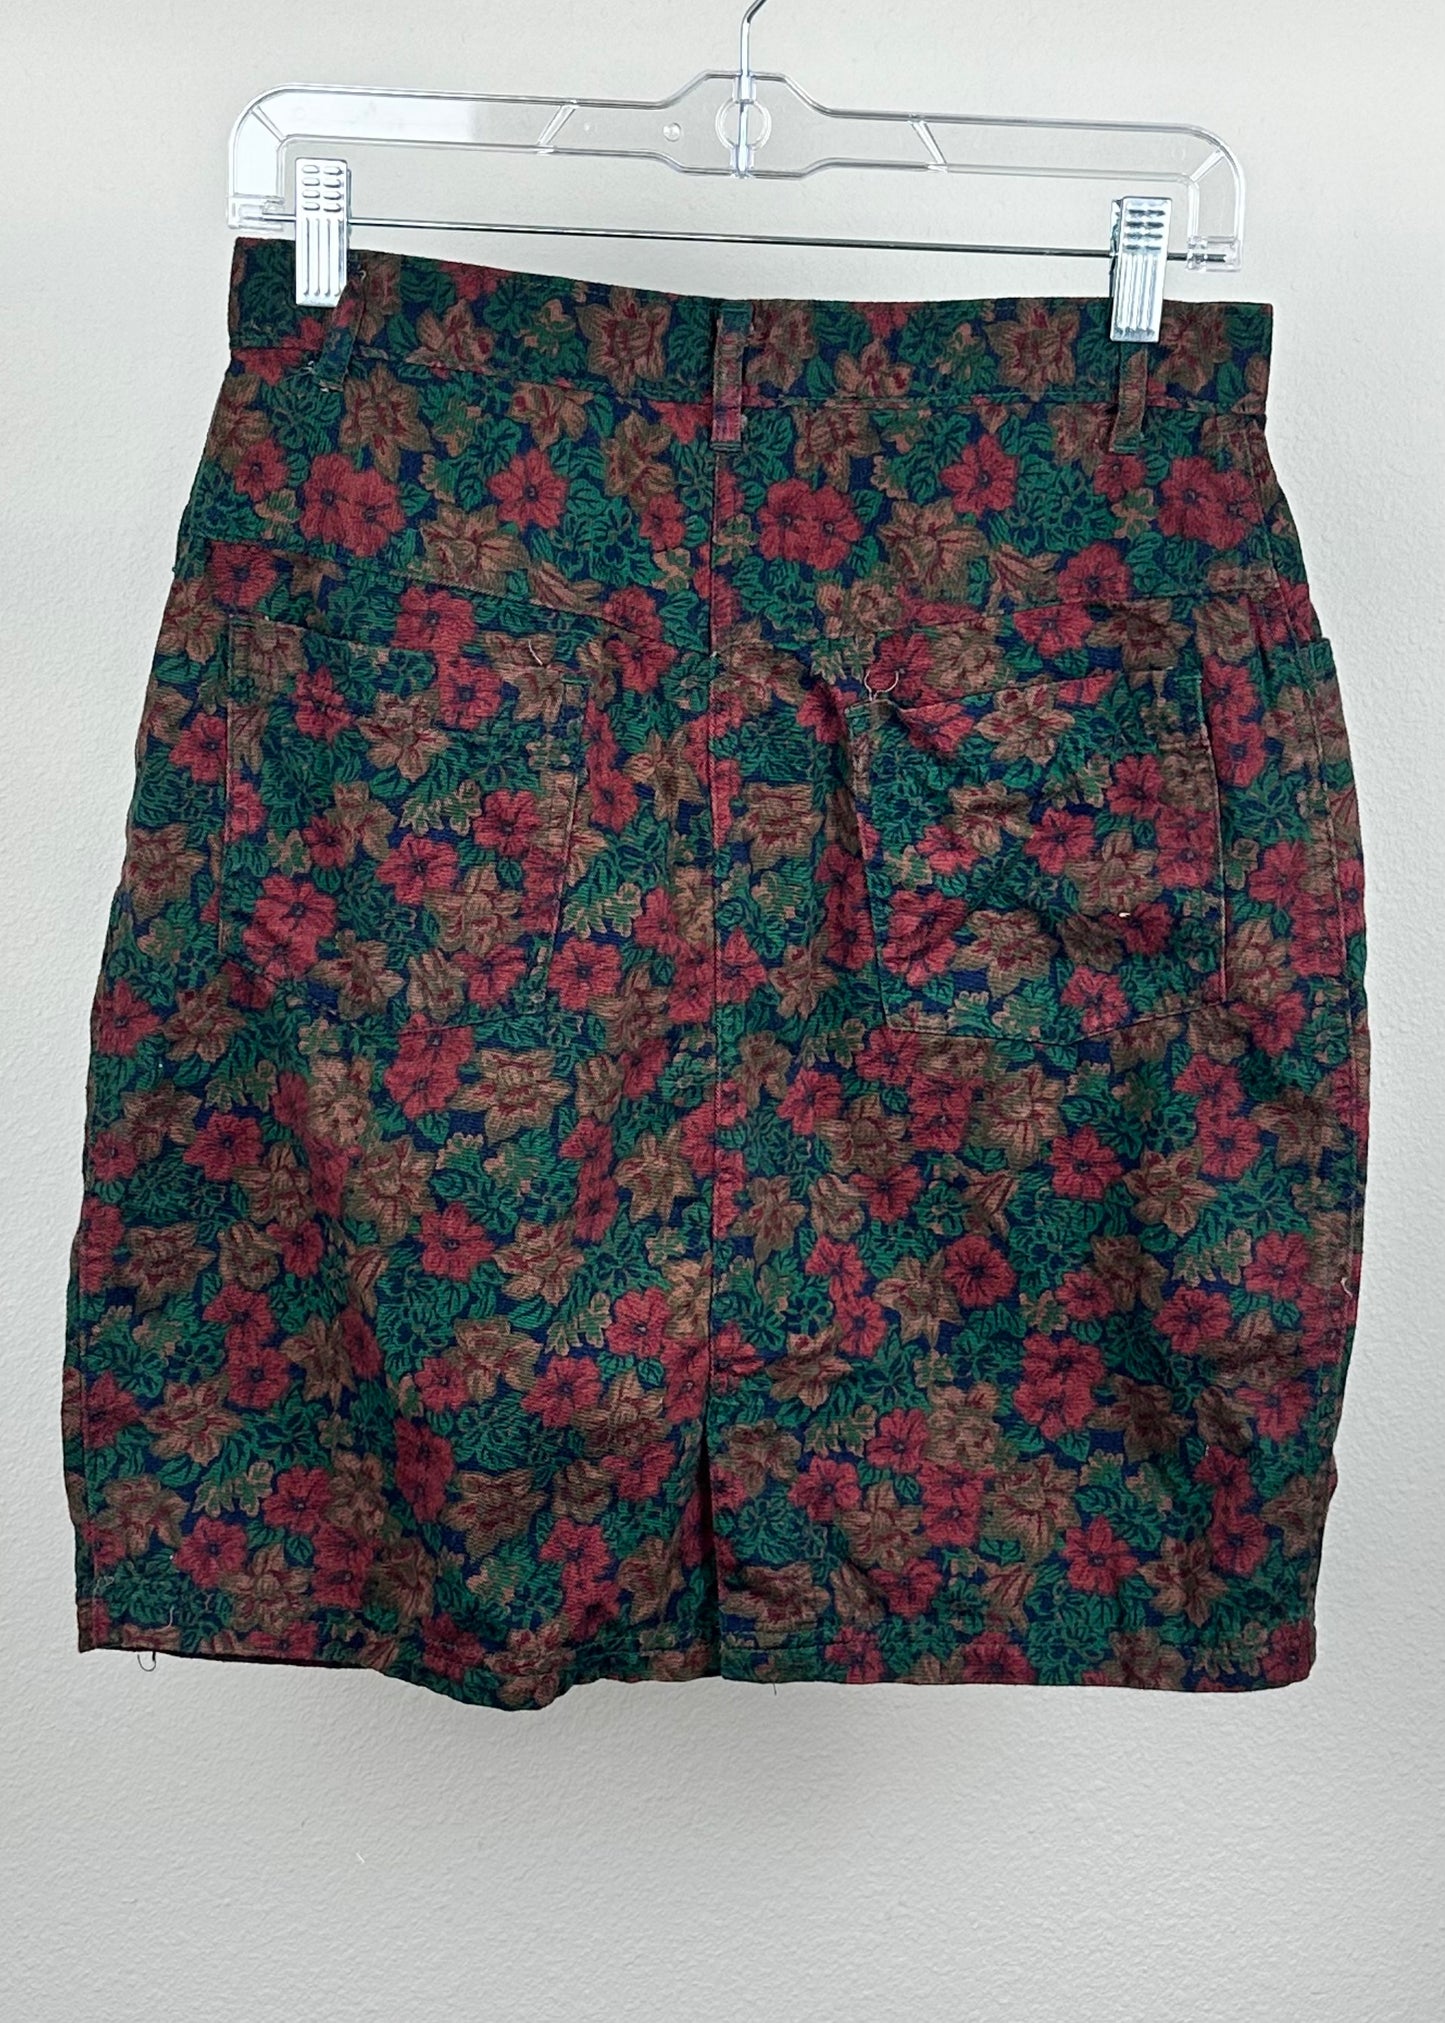 Vintage Flower Skirt by Ruckus